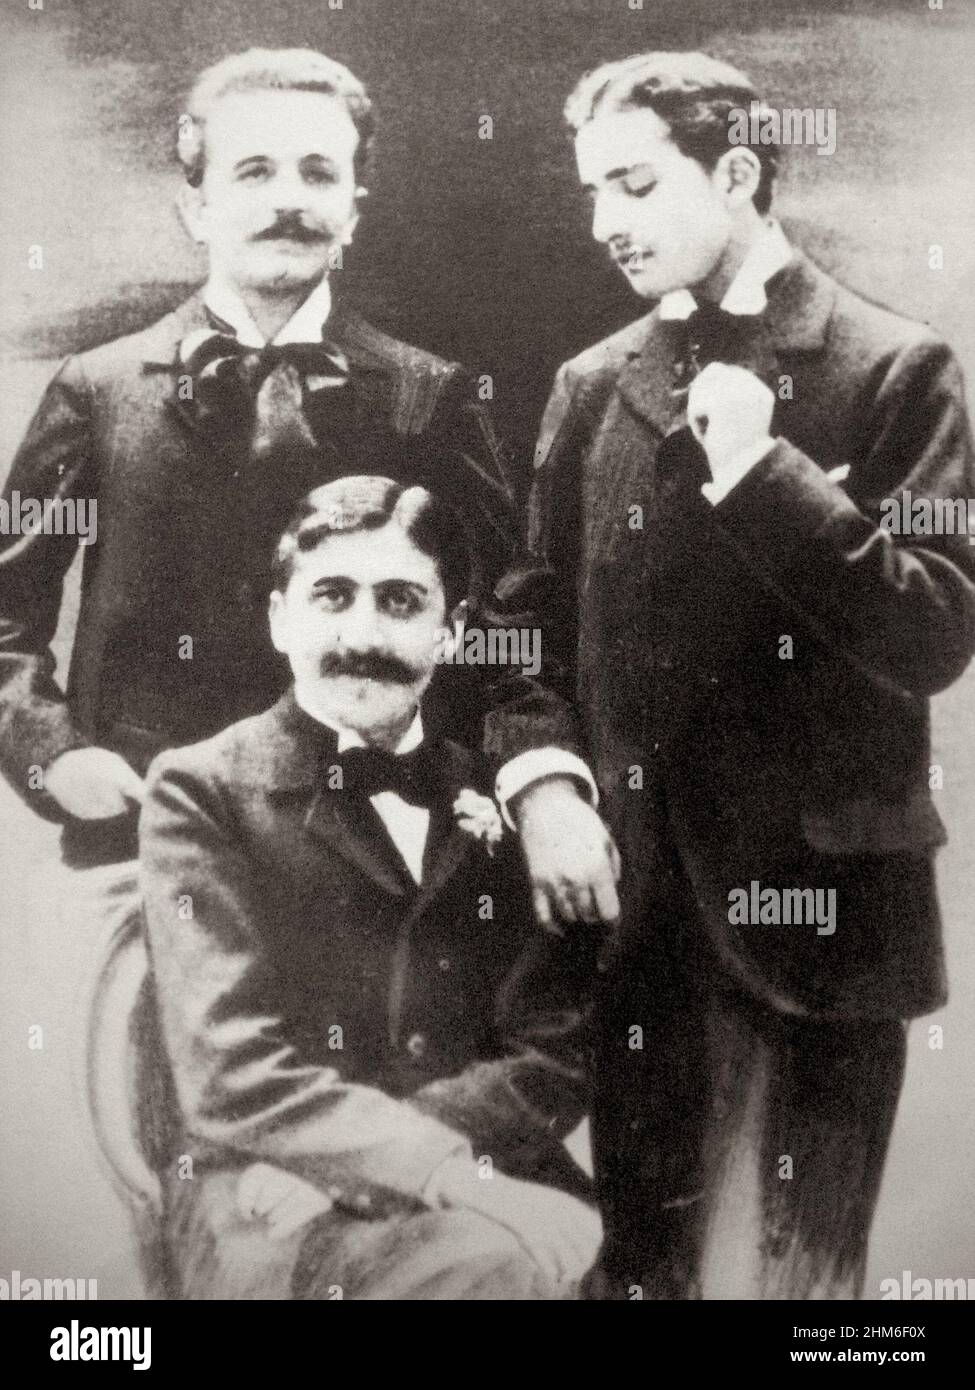 Una foto dello scrittore francese Marcel Proust, autore di in Search of Lost Time, con Robert de Flers e Lucien Daudet. La foto è del 1894, quando Proust aveva 23 anni. Foto Stock